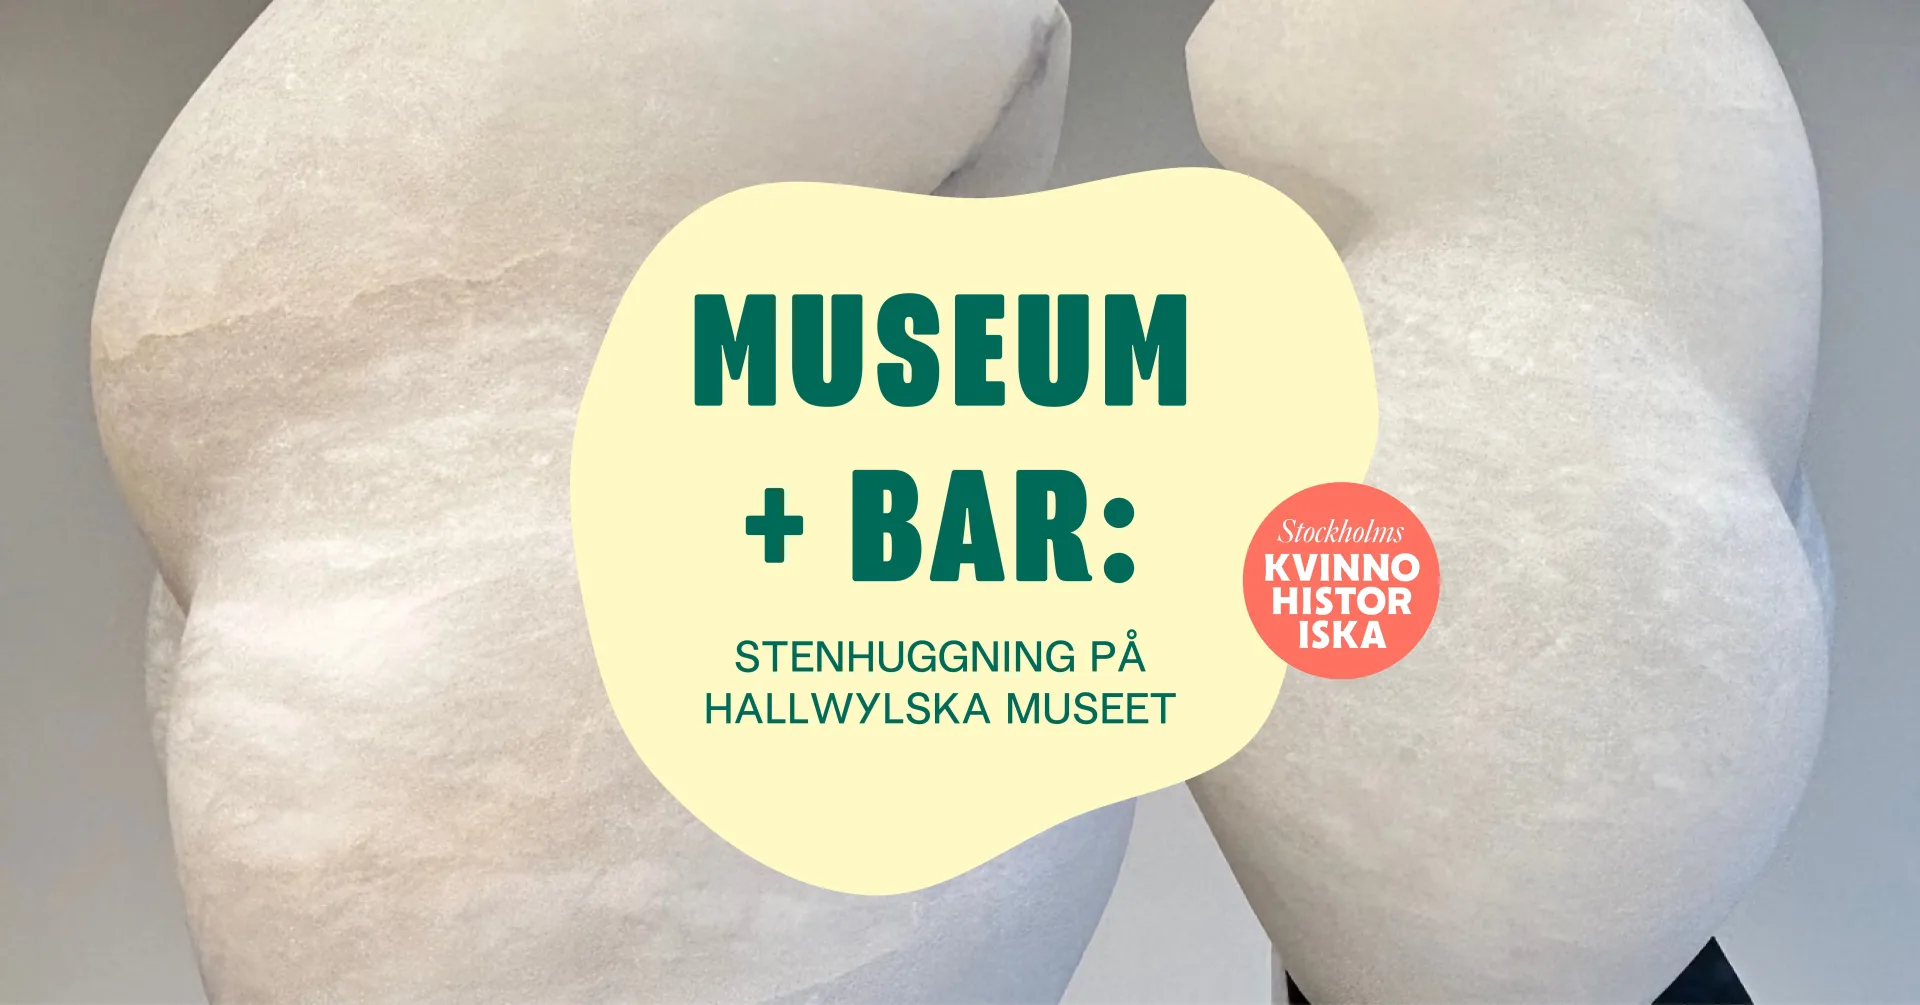 Konstverk i bakgrunden och på konstverket står texten Museums + bar: Stenhuggning på Hallwylska museet - samarbete med Kvinnohistoriska